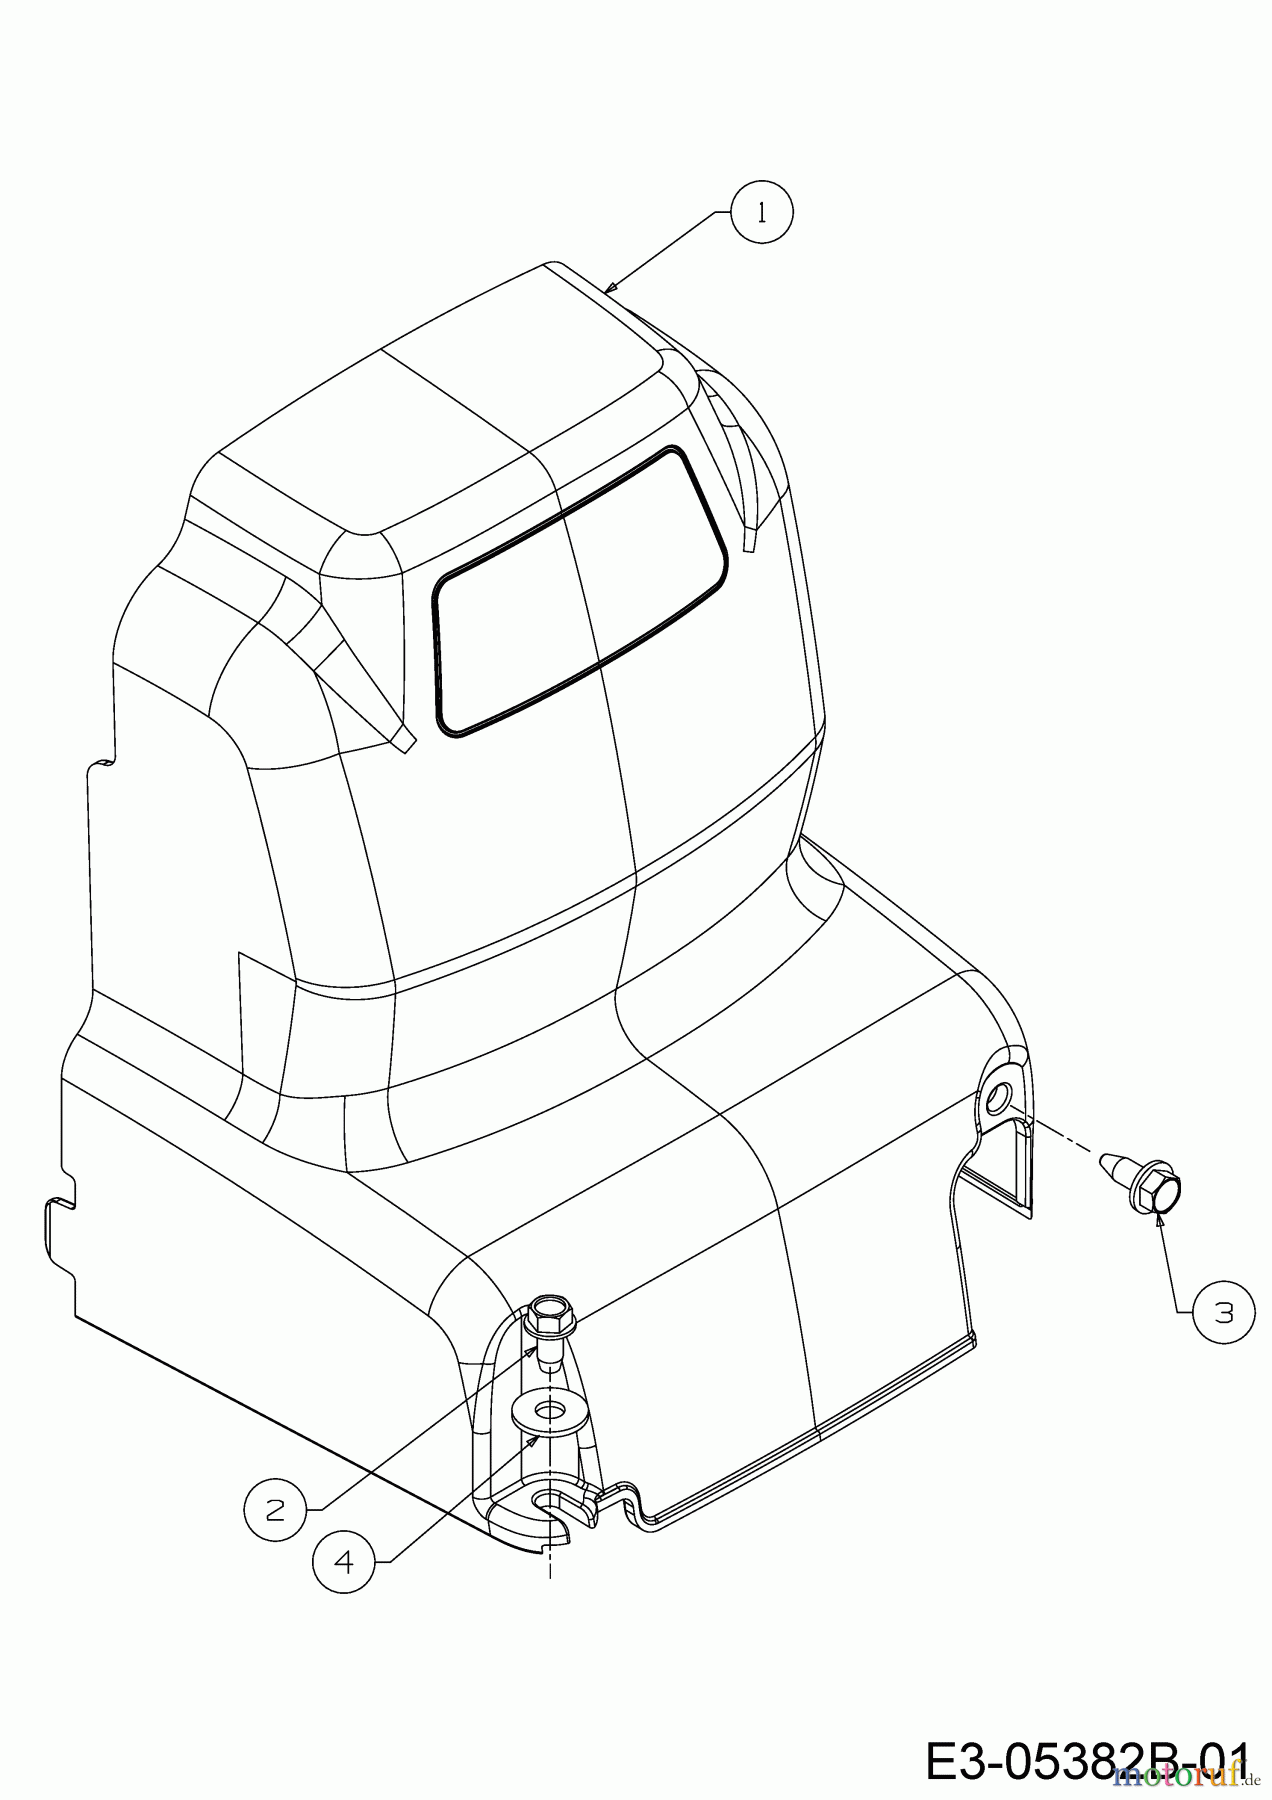  Cub Cadet Motobineuse VT 100 21A-70M8710  (2017) Couvercle de protection courroie